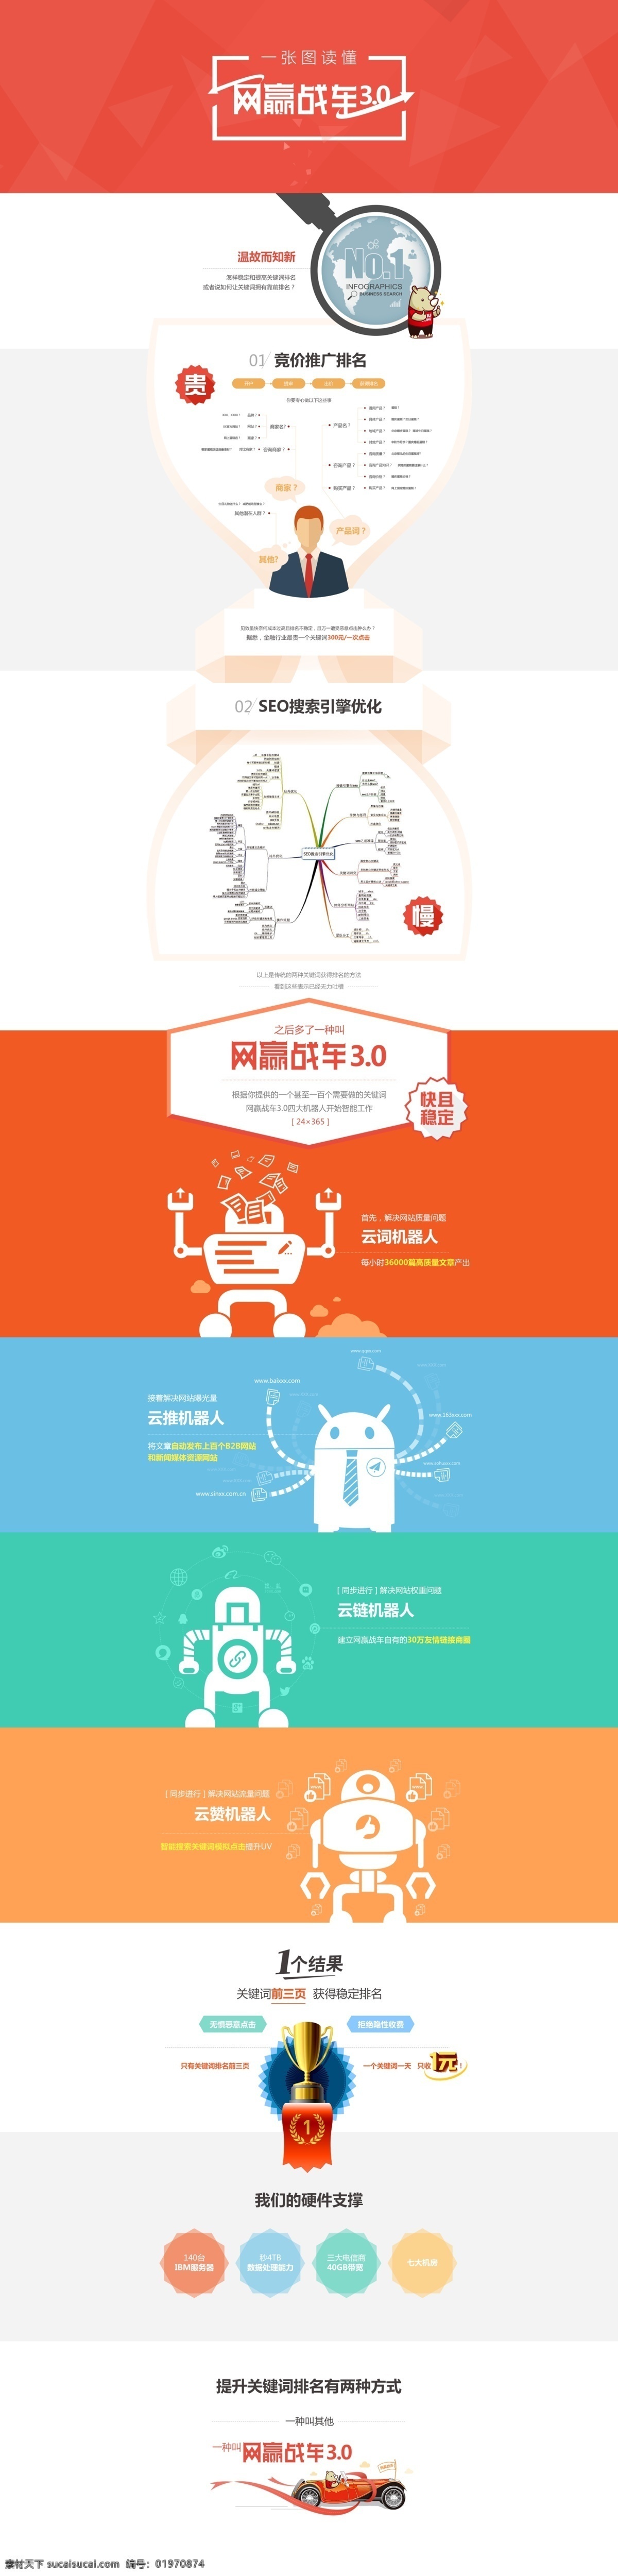 企业网站推广 竞价推广 seo 搜索引擎 优化 机器人 网站排名 关键词 服务器 白色